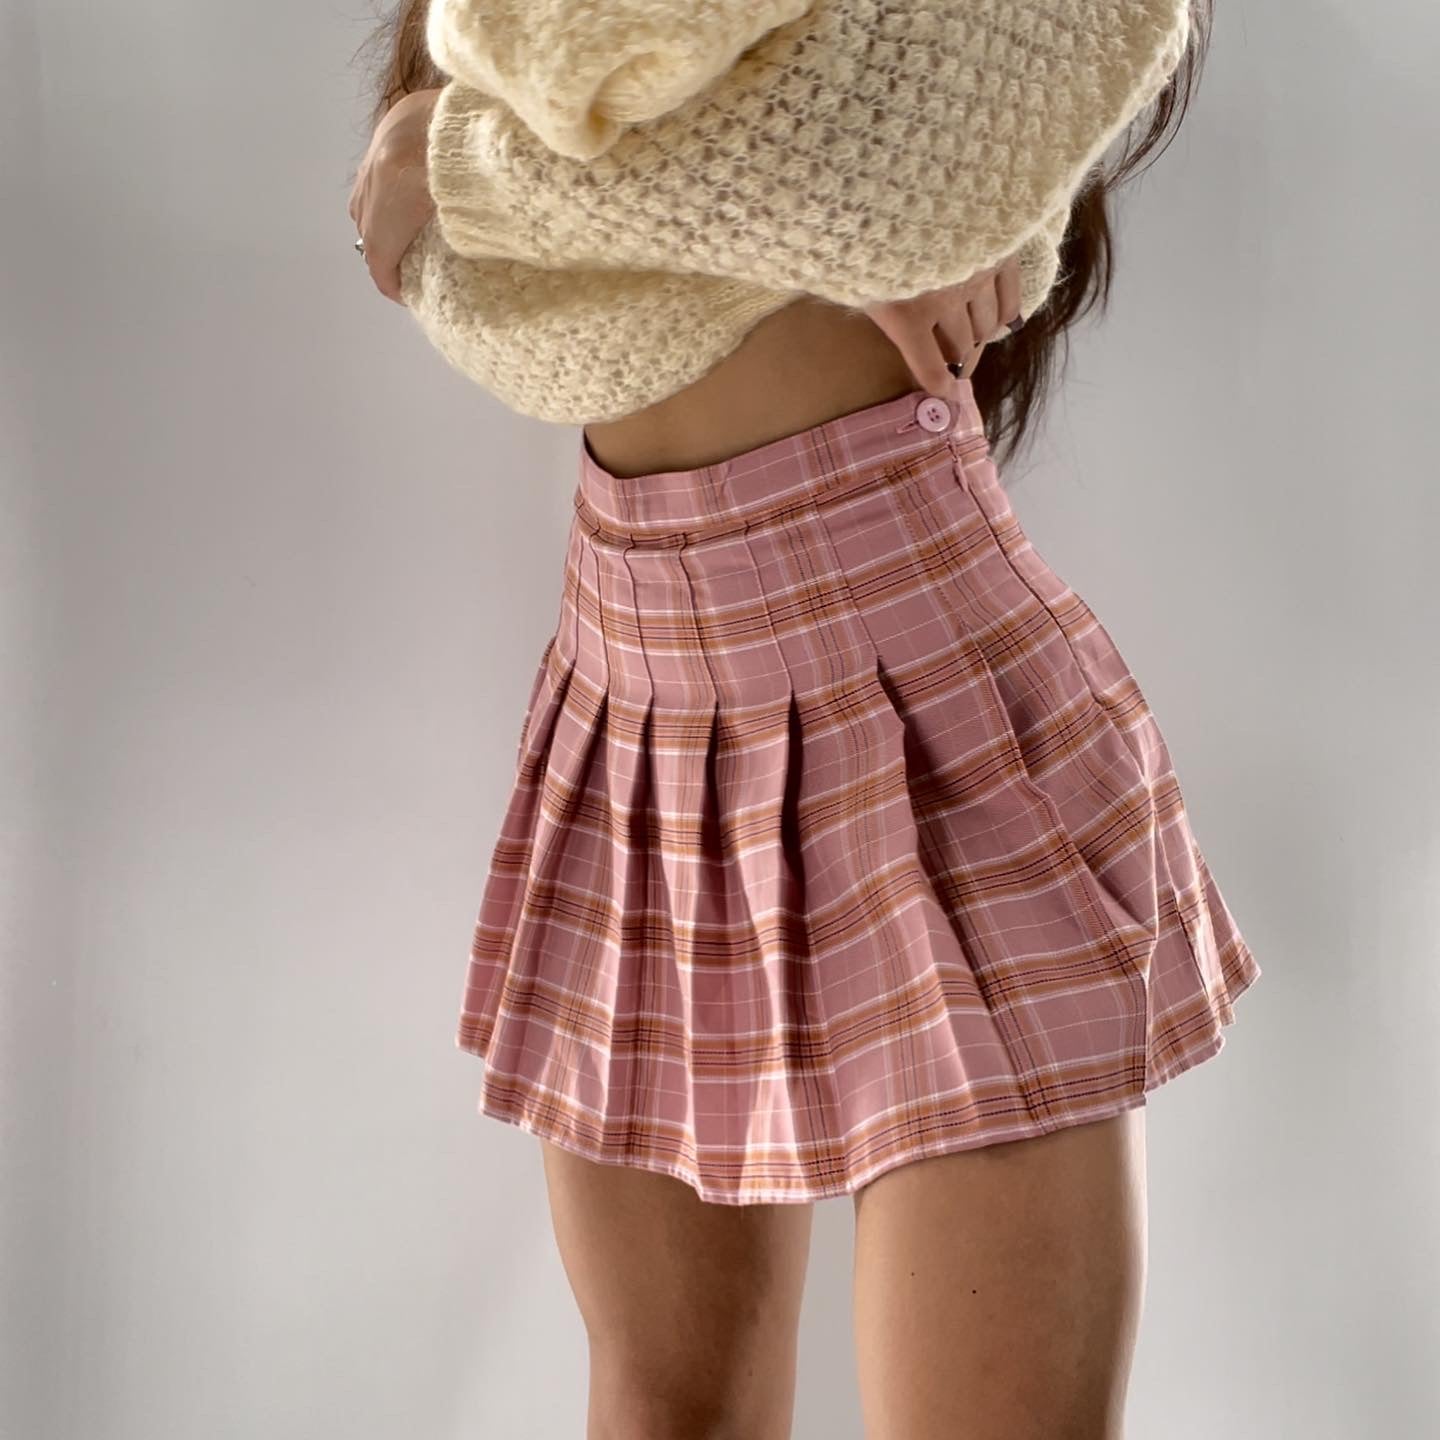 Plaid Pleated n Pink Mini Skirt (Medium)